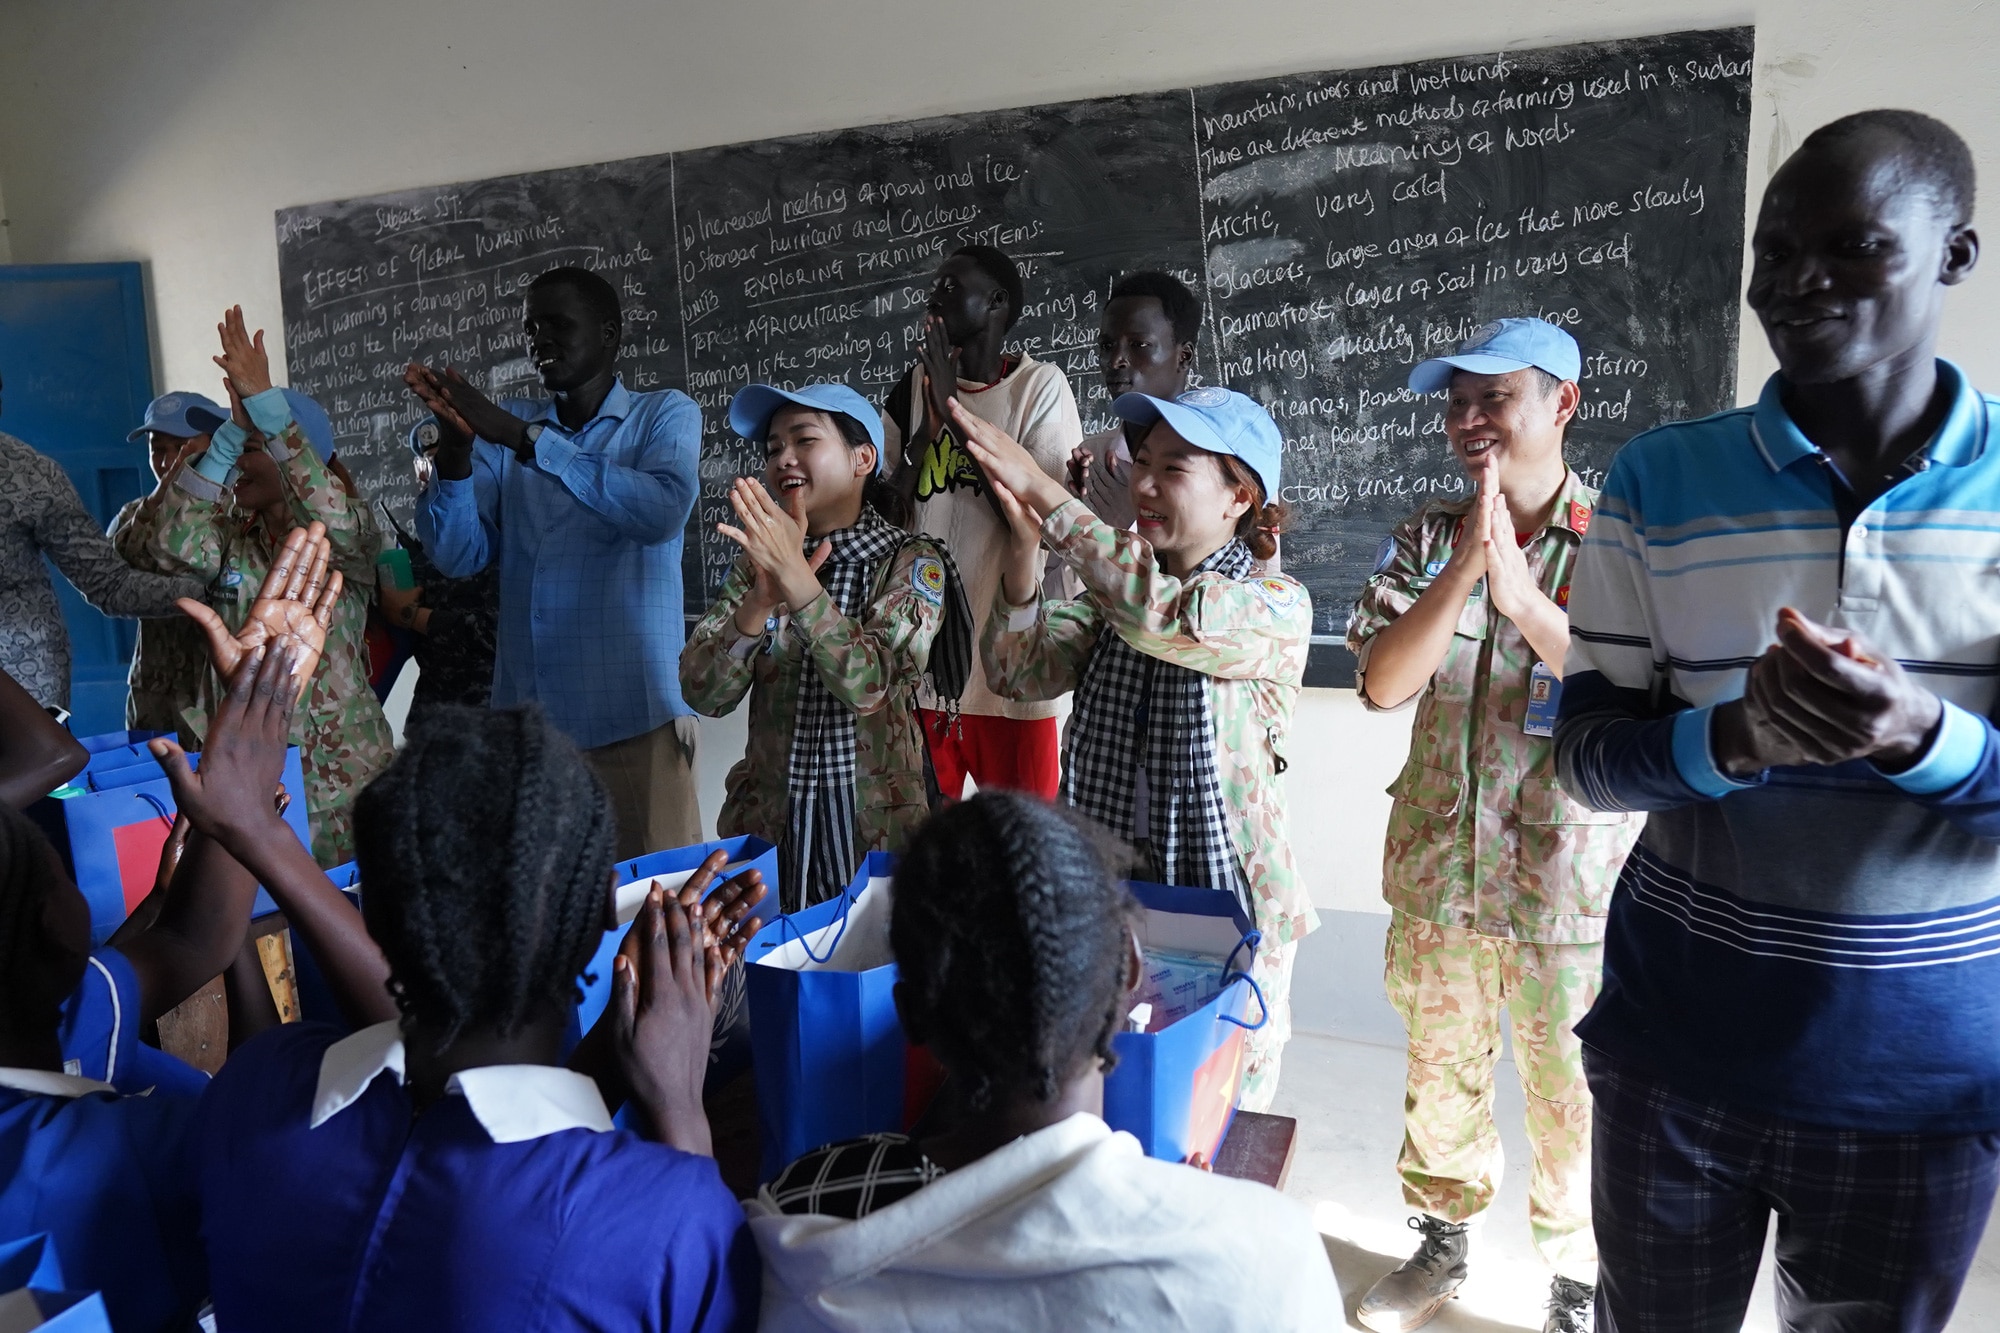 โรงพยาบาลสนามระดับ 2 ลำดับที่ 5 จัดเล่นเกมและร้องเพลงร่วมกับนักเรียนหญิงที่โรงเรียนประถมในซูดานใต้ - รูปถ่าย: BVCC